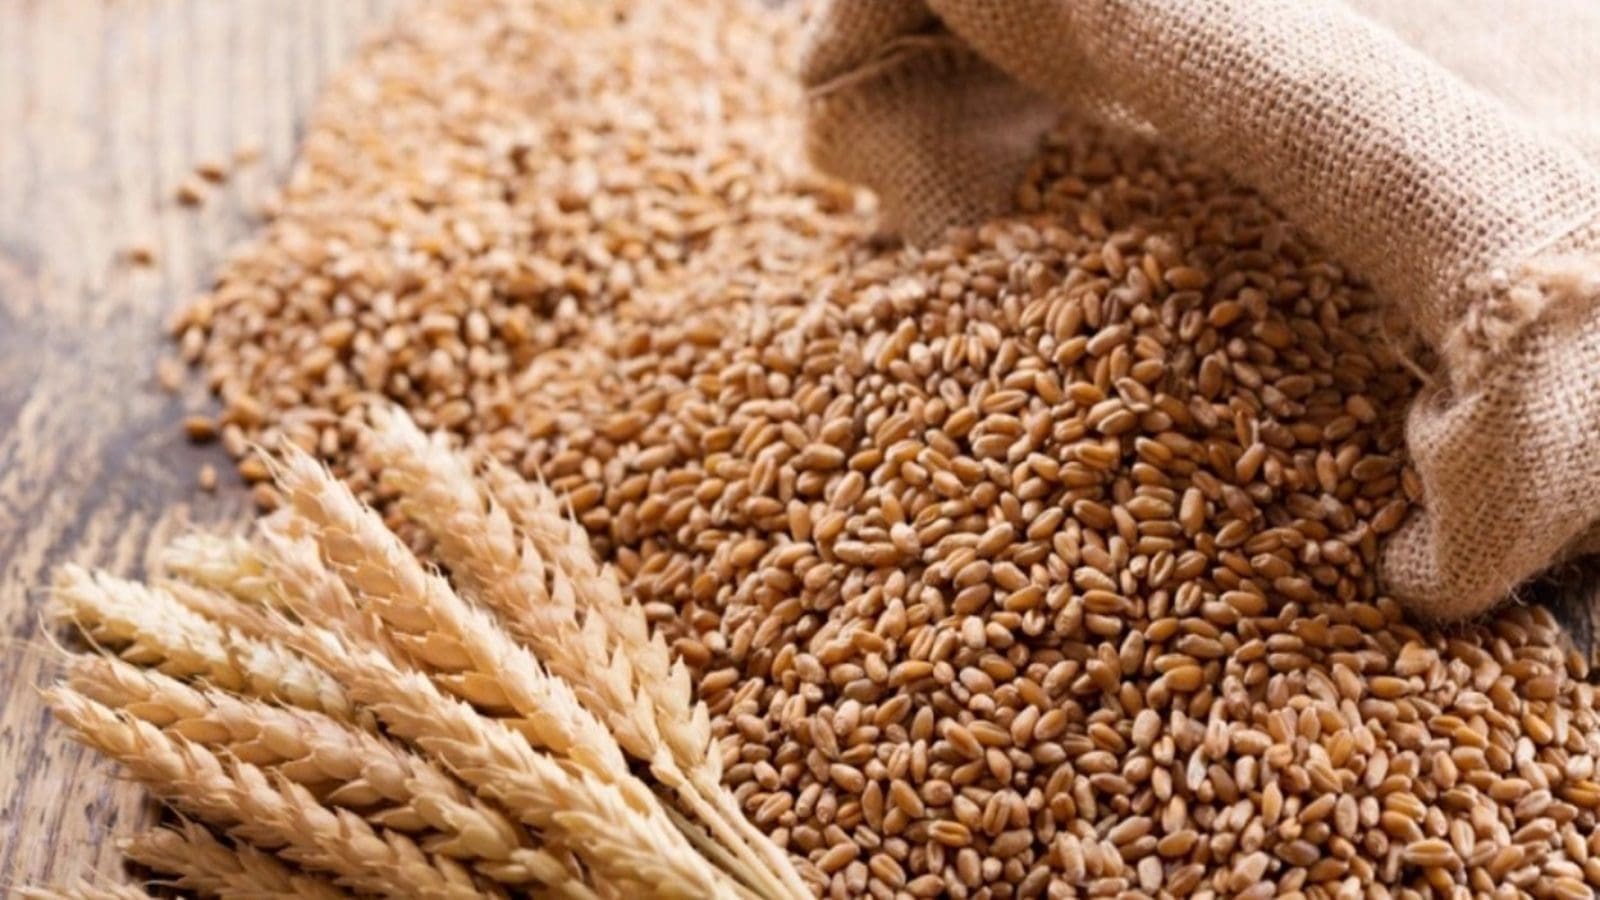 Zambian Cabinet allows wheat imports to address domestic shortfall